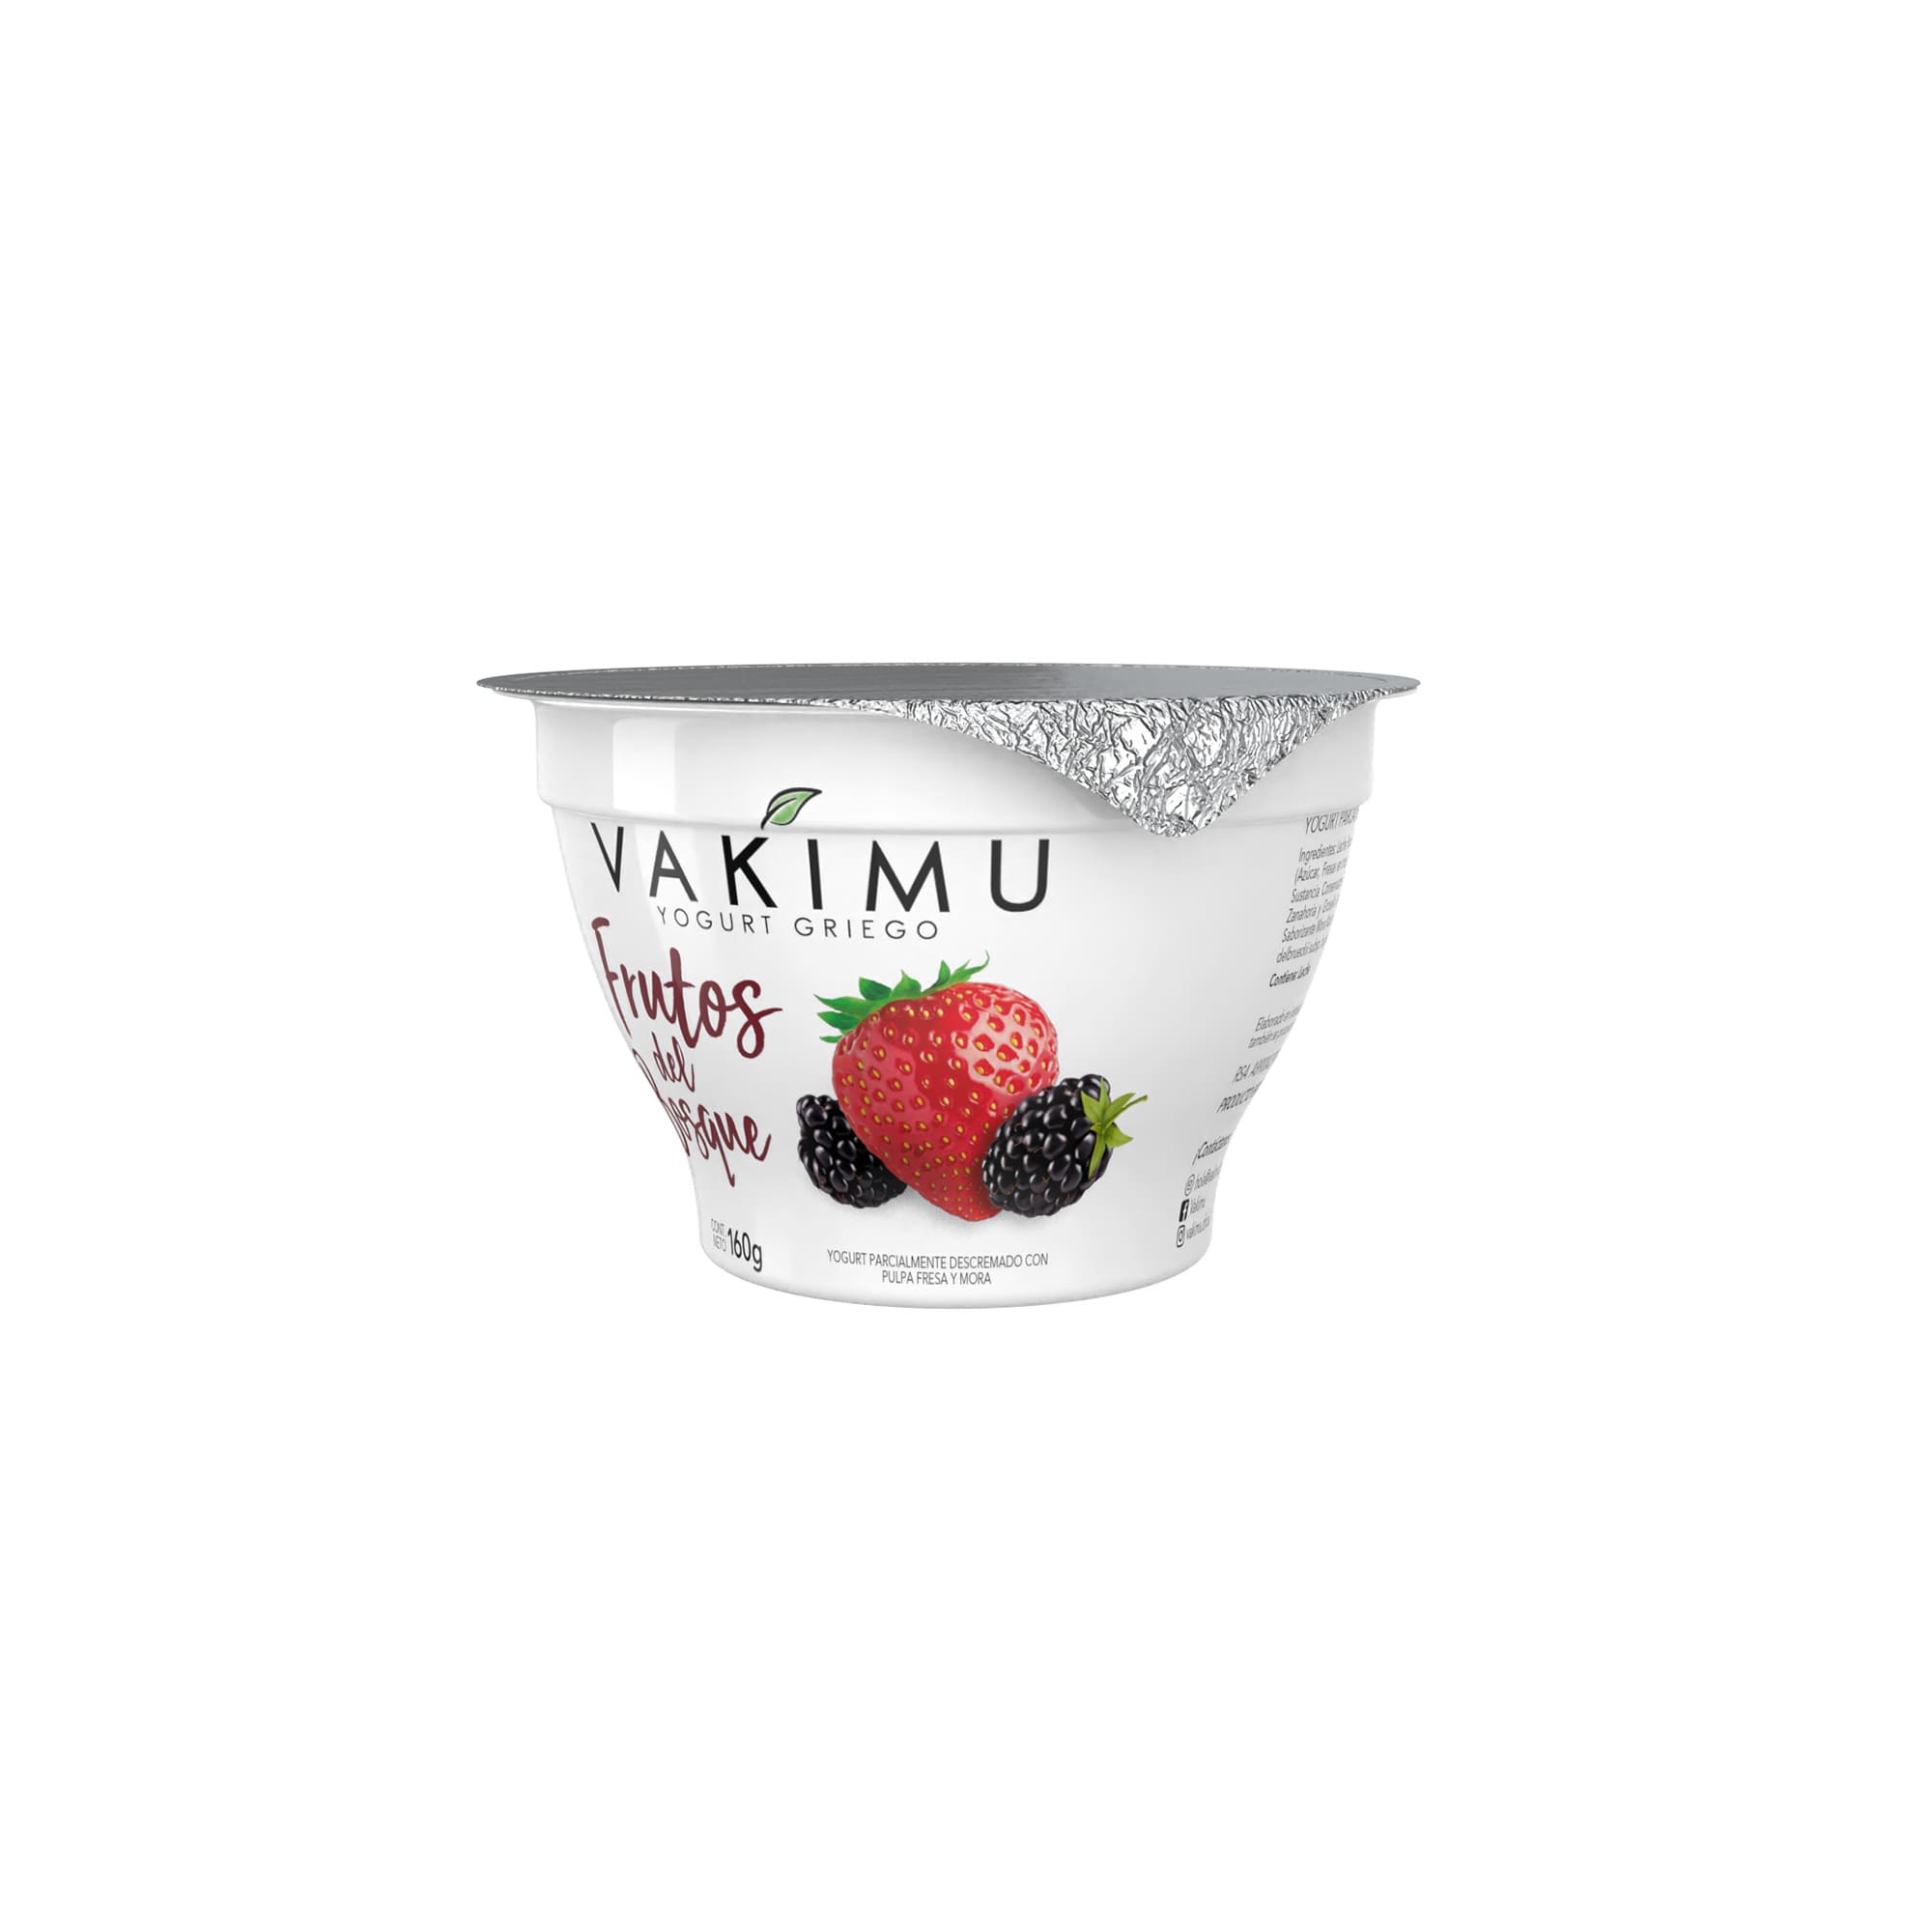 Yogurt Griego Vakimu Frutos del Bosque 160g